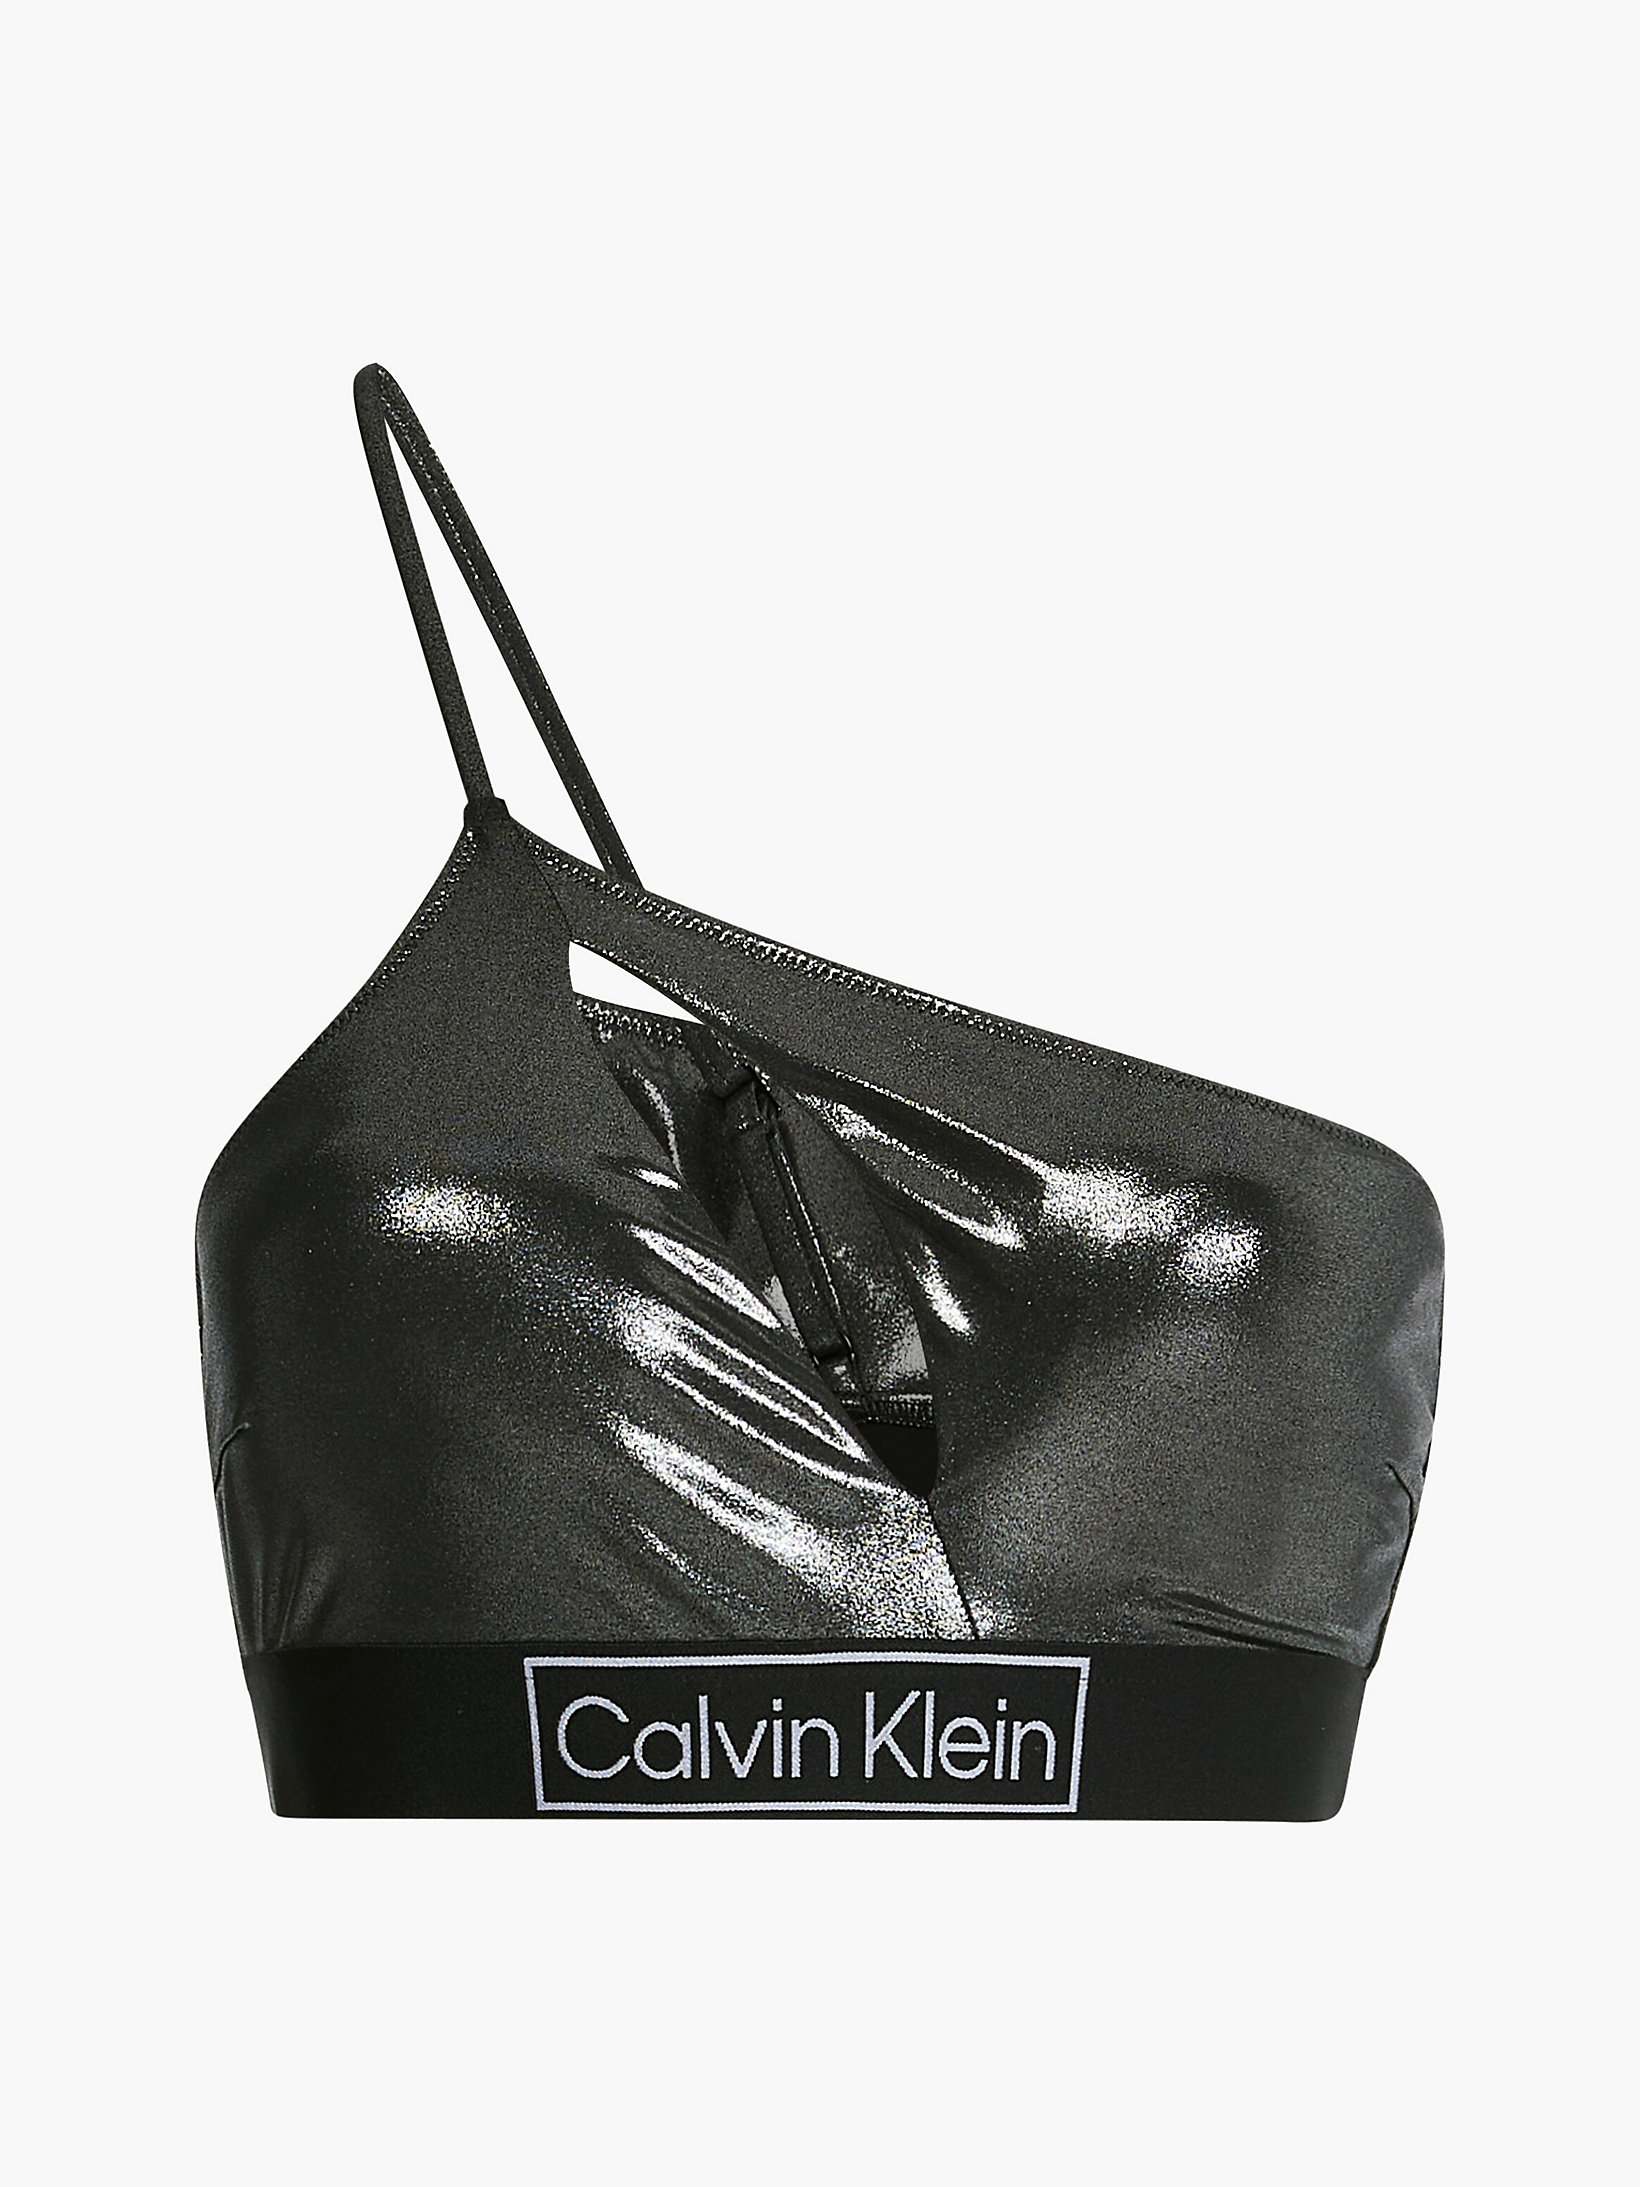 Pvh Black > Góra Od Bikini Na Jedno Ramię - Core Festive > undefined Kobiety - Calvin Klein